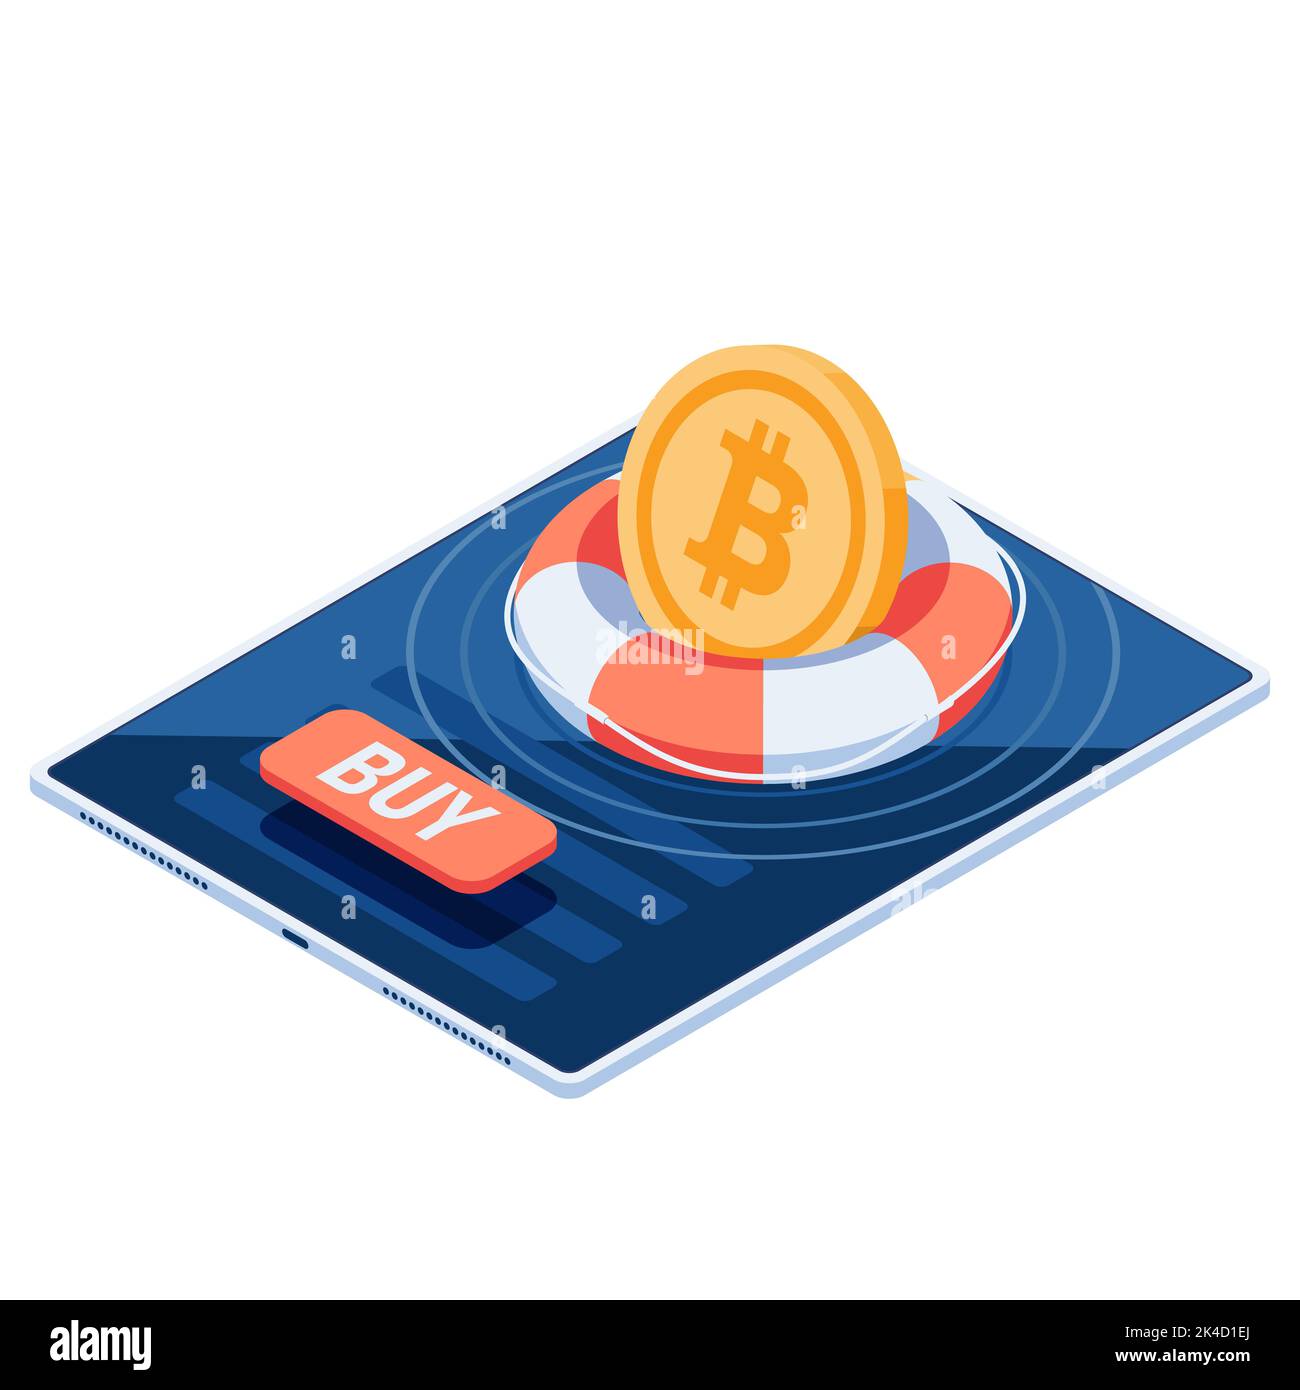 Flacher 3D Isometrischer Bitcoin mit Lifebuoy schwimmend auf dem Smartphone-Bildschirm. Bitcoin als Safe Haven Asset bei Kryptowährungsmarkt Crash-Konzept. Stock Vektor